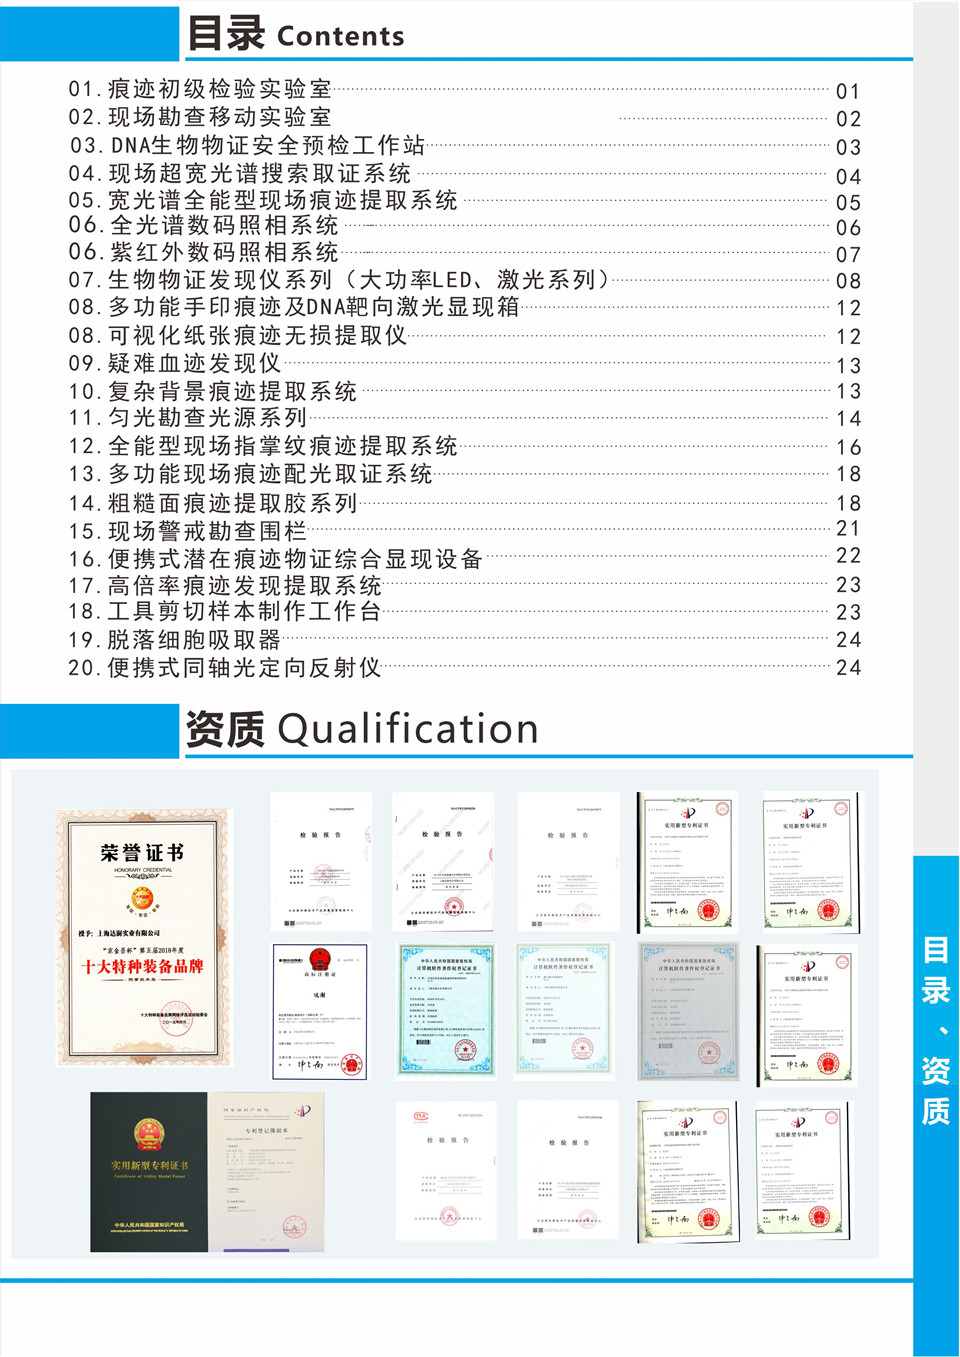 上海达澍实业有限公司宣传画册--自产产品篇(组图)